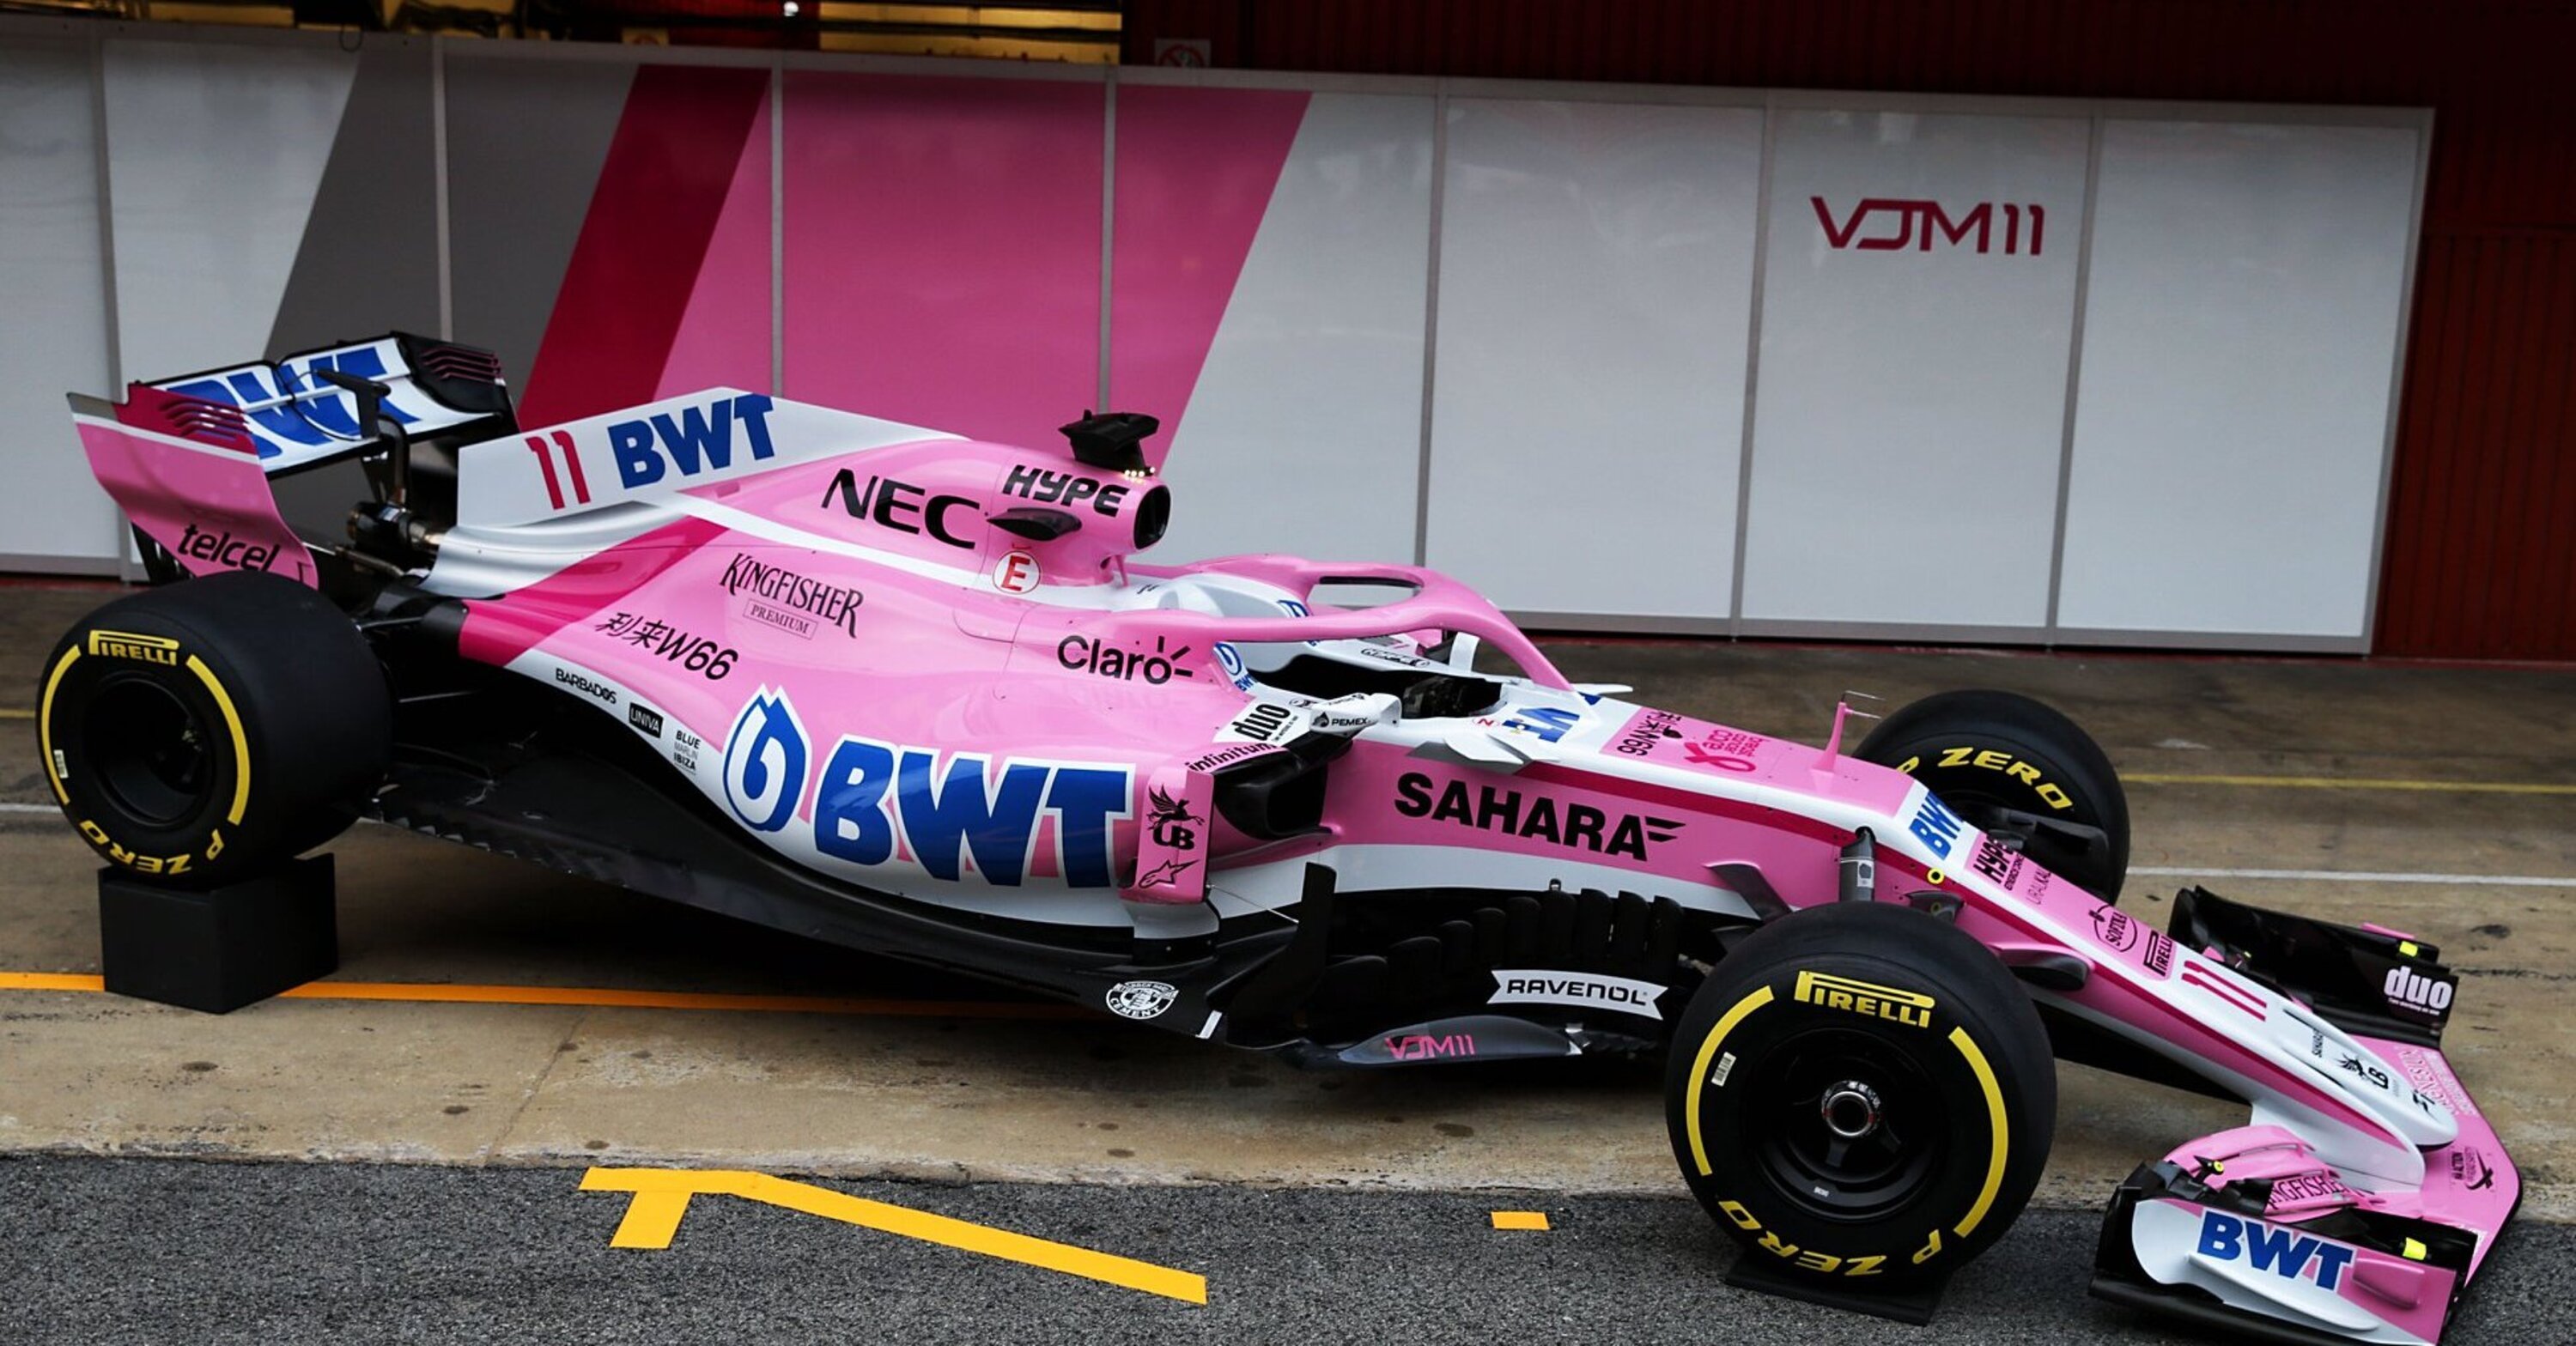 F1 2018, Force India toglie i veli alla VJM11